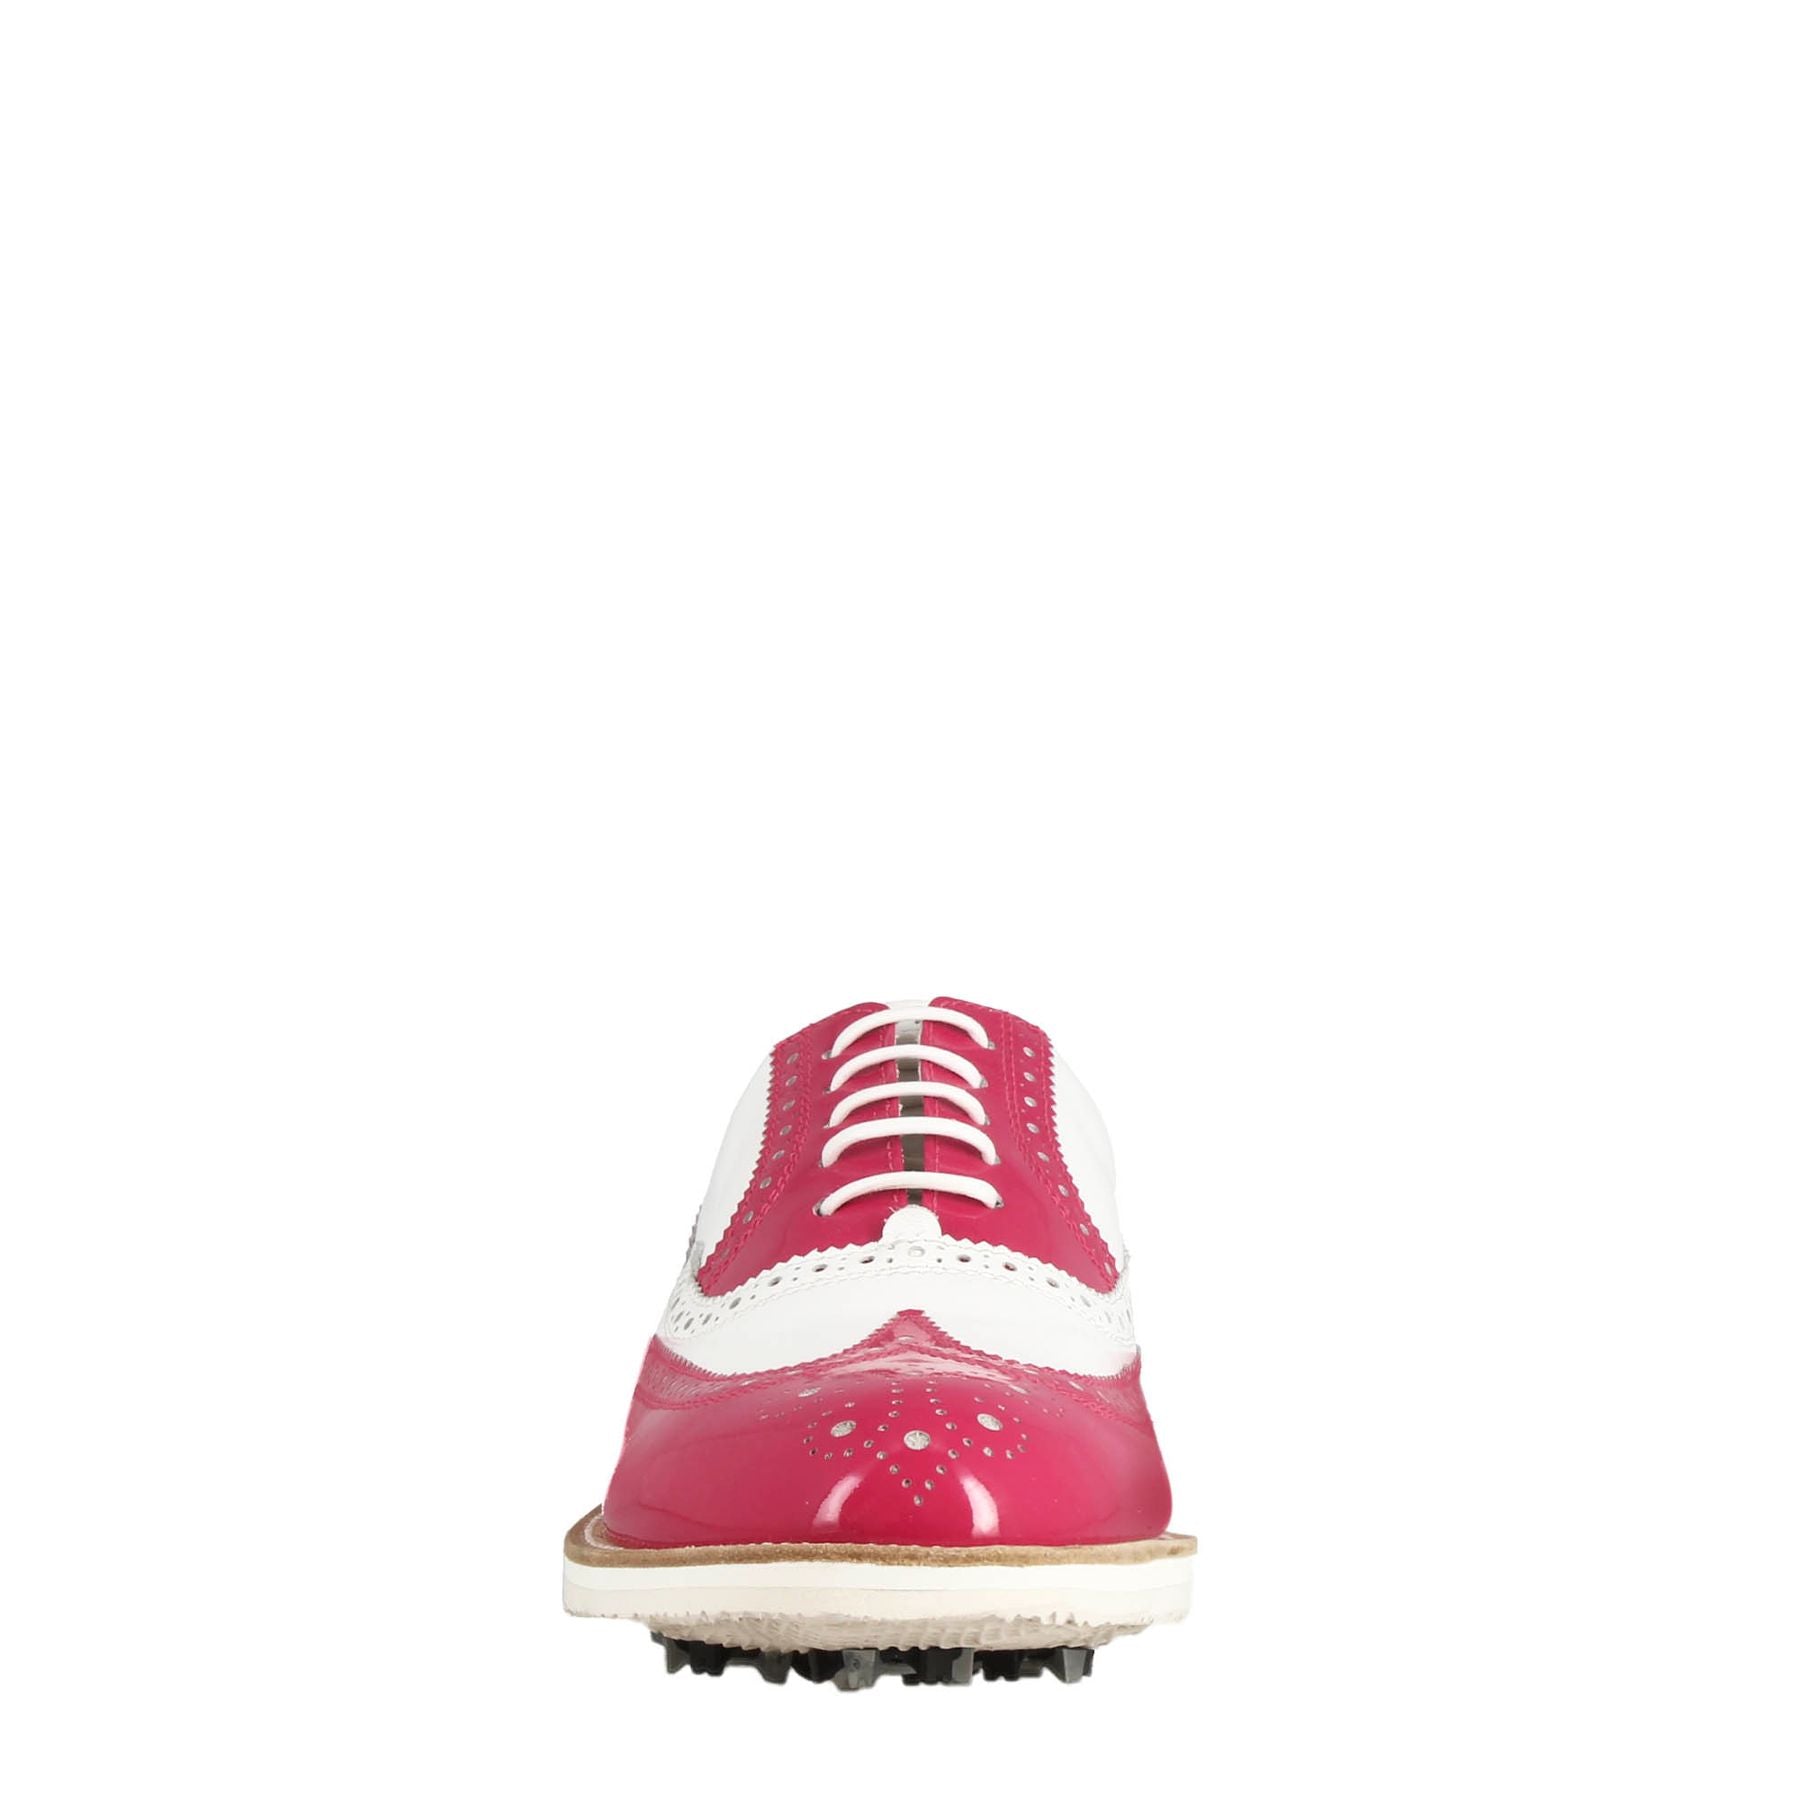 Scarpe golf da donna fatte a mano in pelle lucida colore bianco rosa.